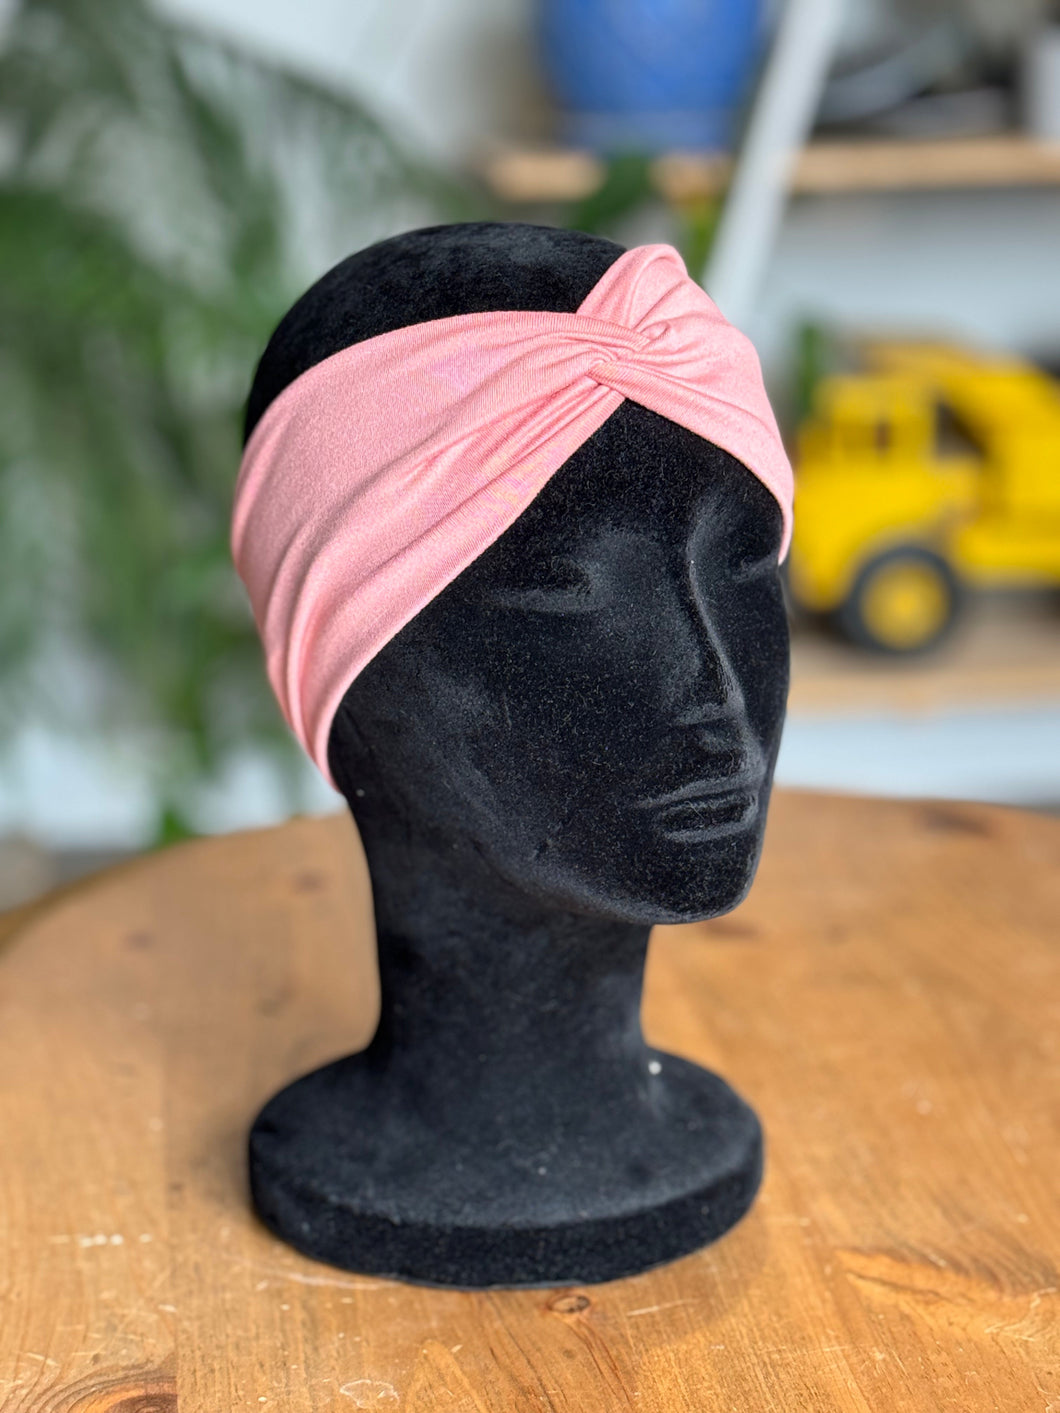 Light pink headband